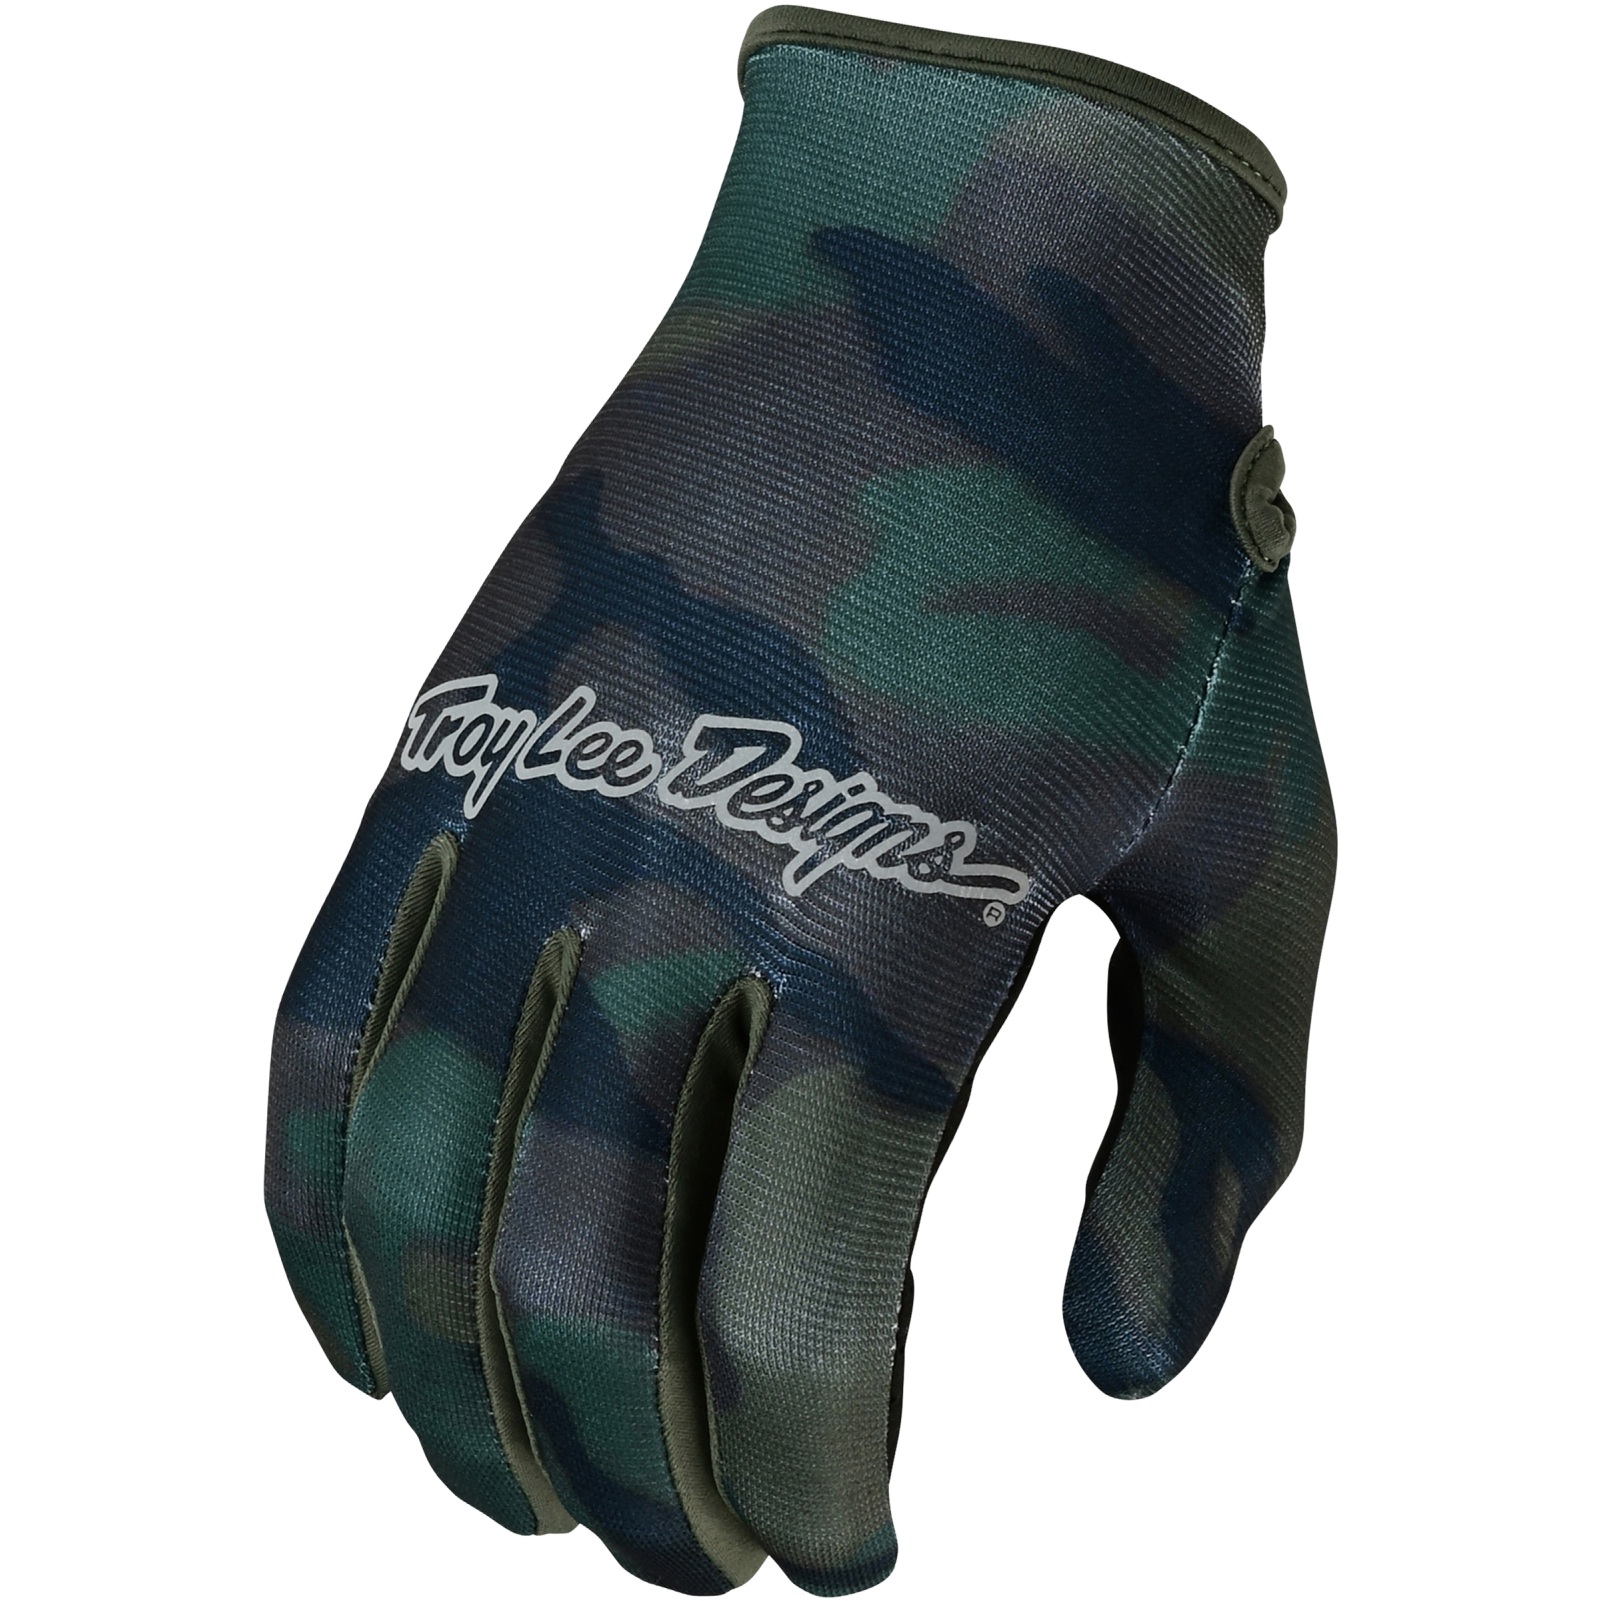 Productfoto van Troy Lee Designs Flowline Handschoenen - Brushed Camo Army